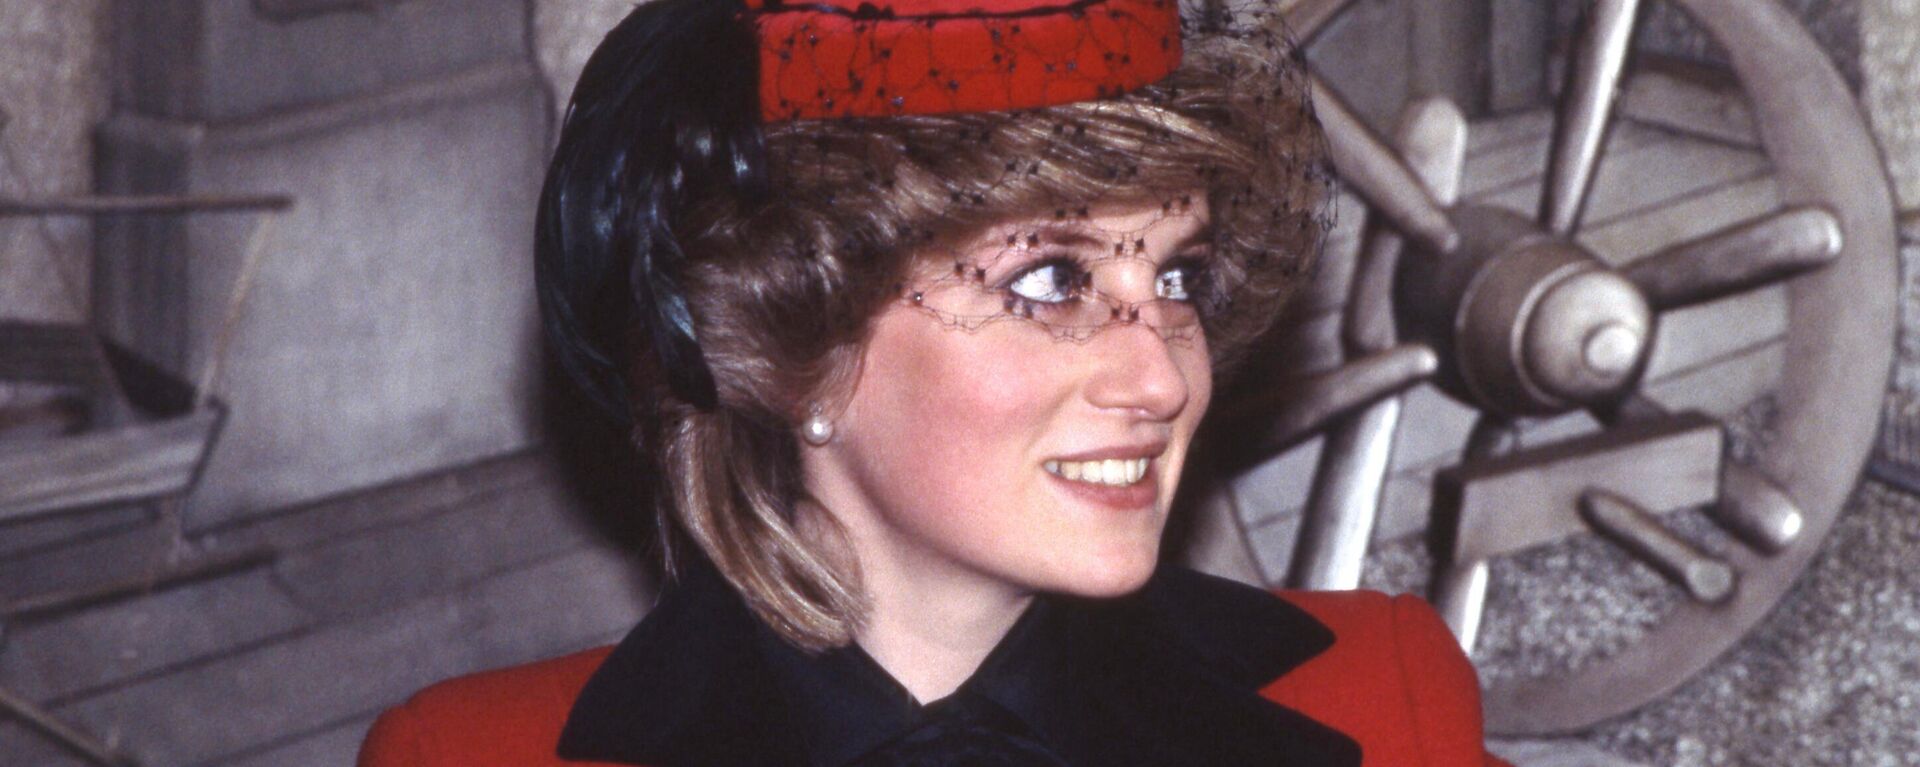 La princesa Diana en 1984 - Sputnik Mundo, 1920, 01.07.2021